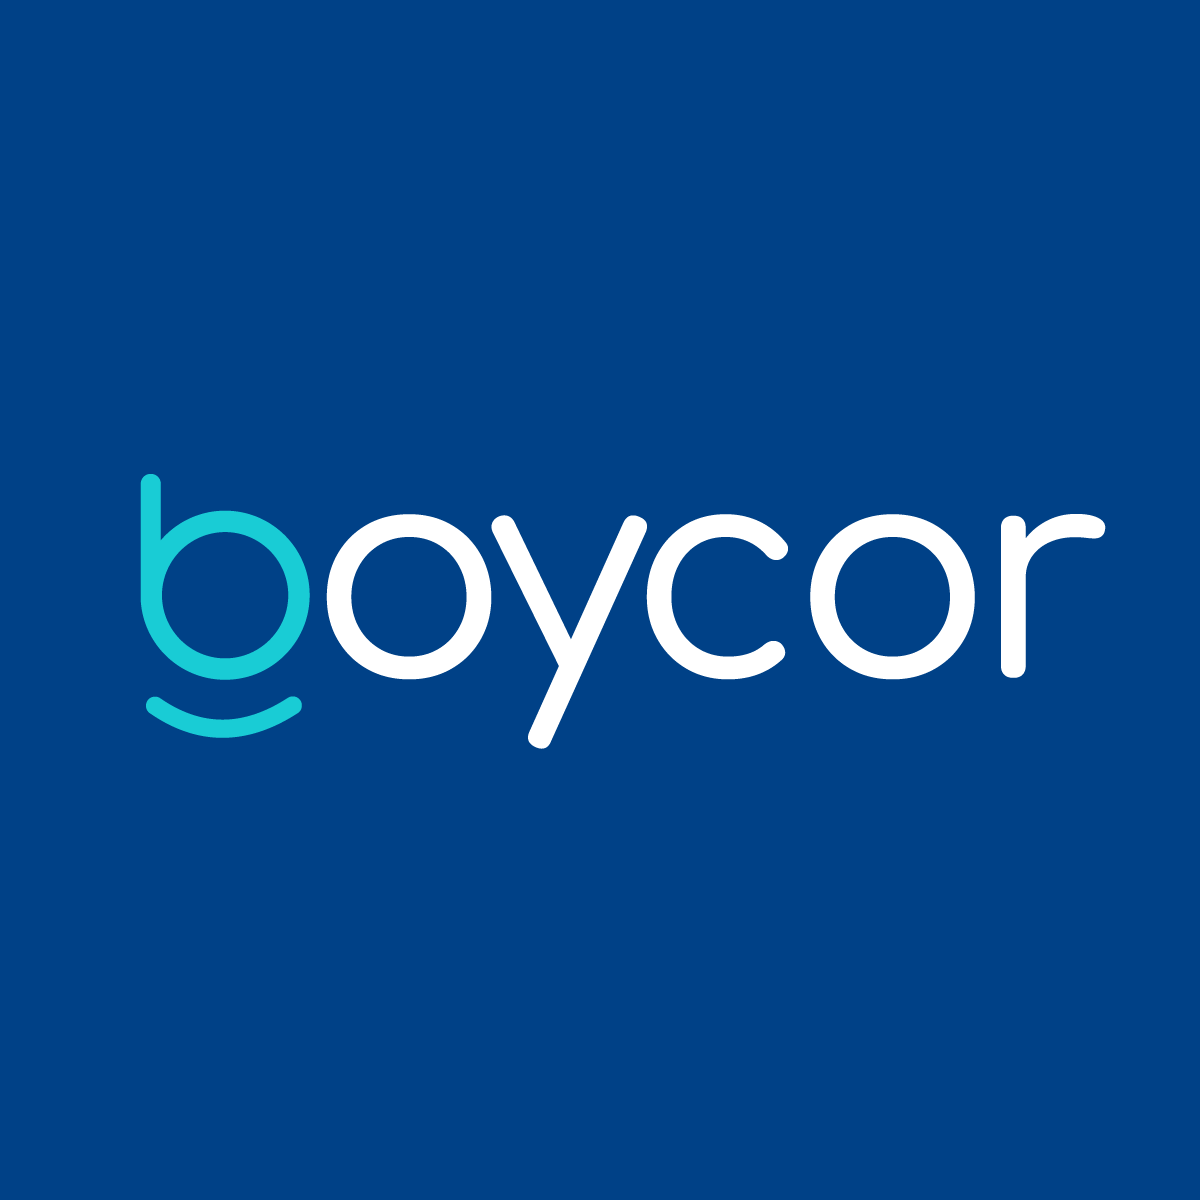 BOYCOR logo